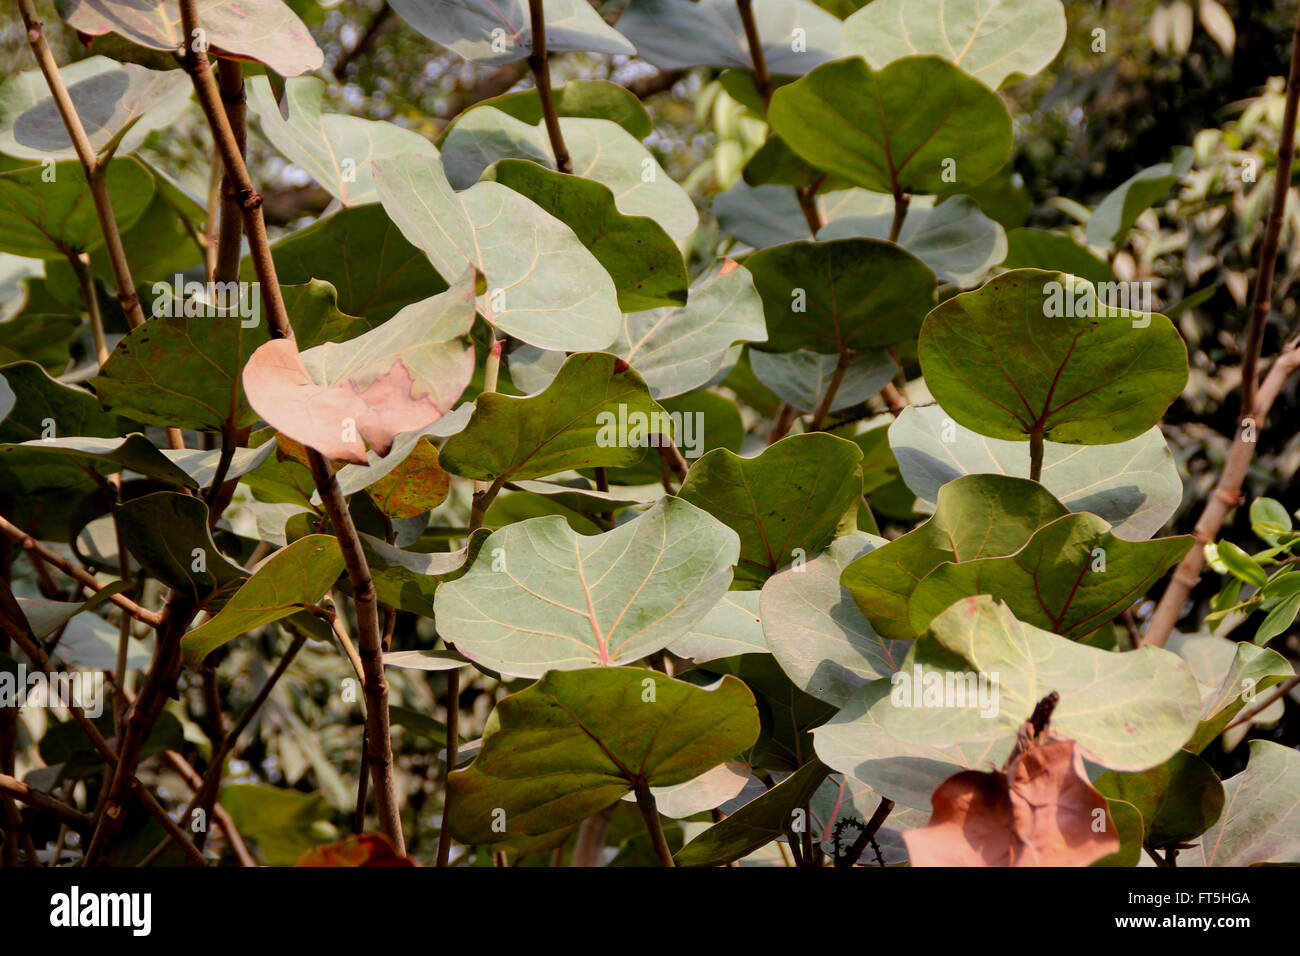 Coccoloba Uvifera, Baygrape, Seagrape, kleiner Baum der Küstenregionen oft mit runden Blättern, Trauben-artigen Früchte kultiviert Stockfoto